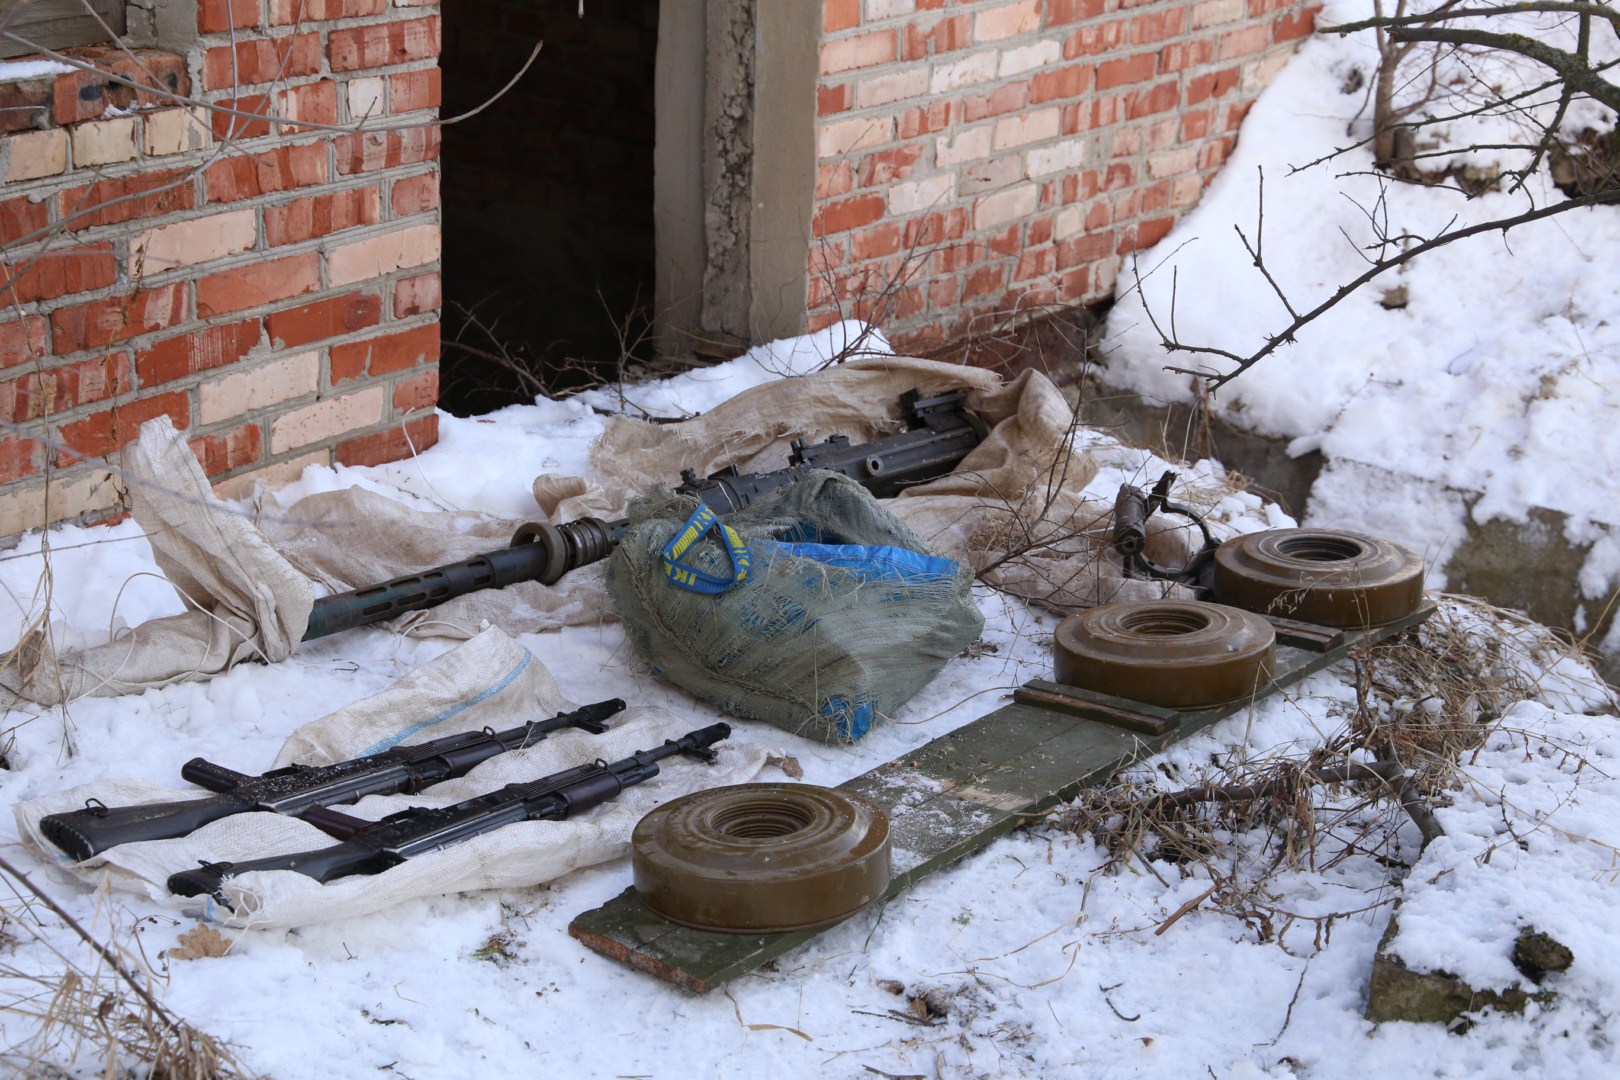 Бойовики знайшли в Луганську схрон зі зброєю, який списали на українську ДРГ (ФОТО) - фото 1